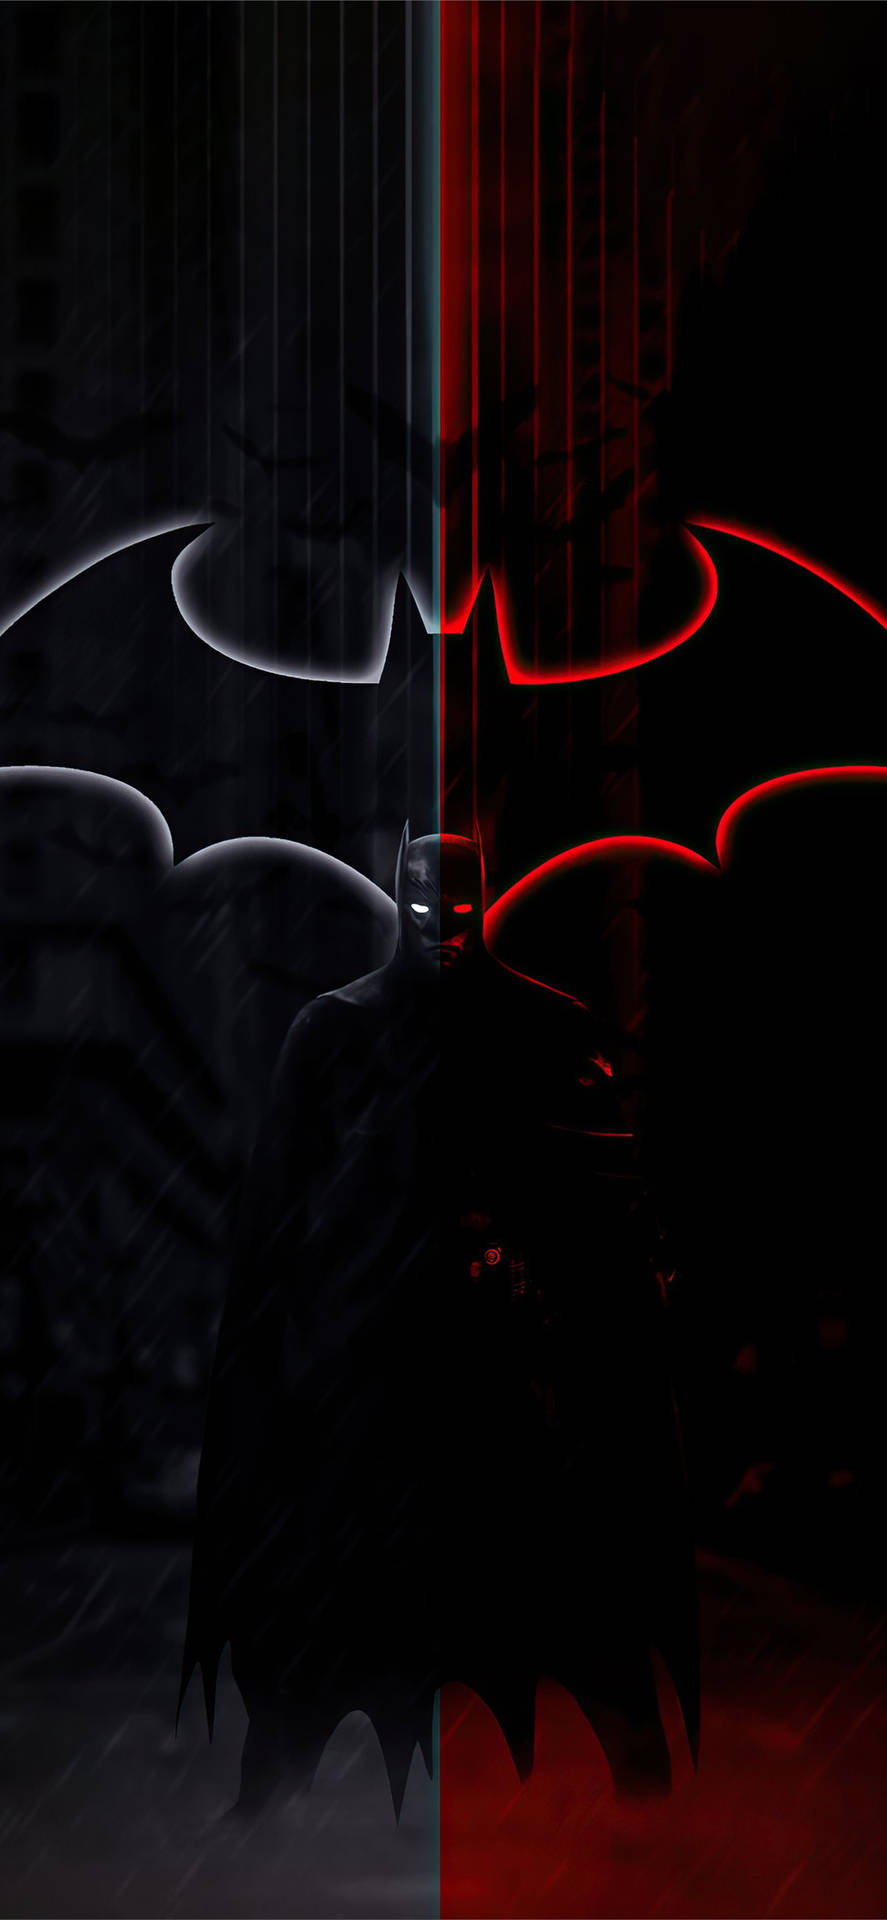 The Batman iPhone Wallpaper Full HD, 4K